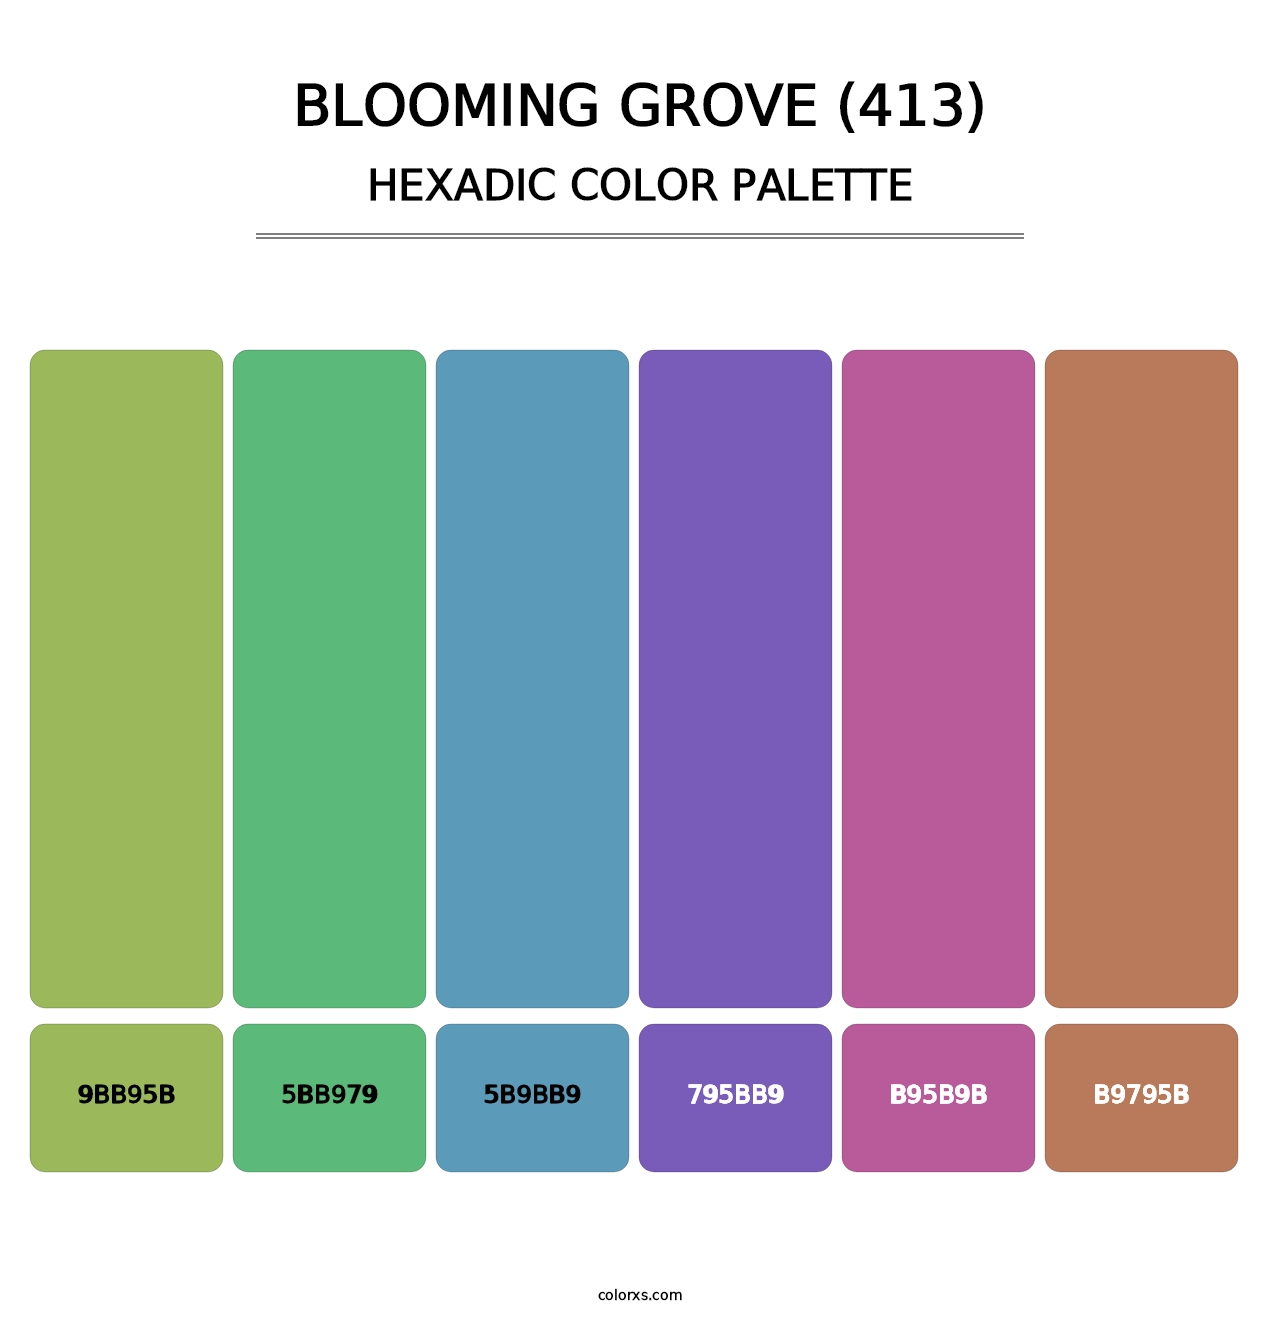 Blooming Grove (413) - Hexadic Color Palette